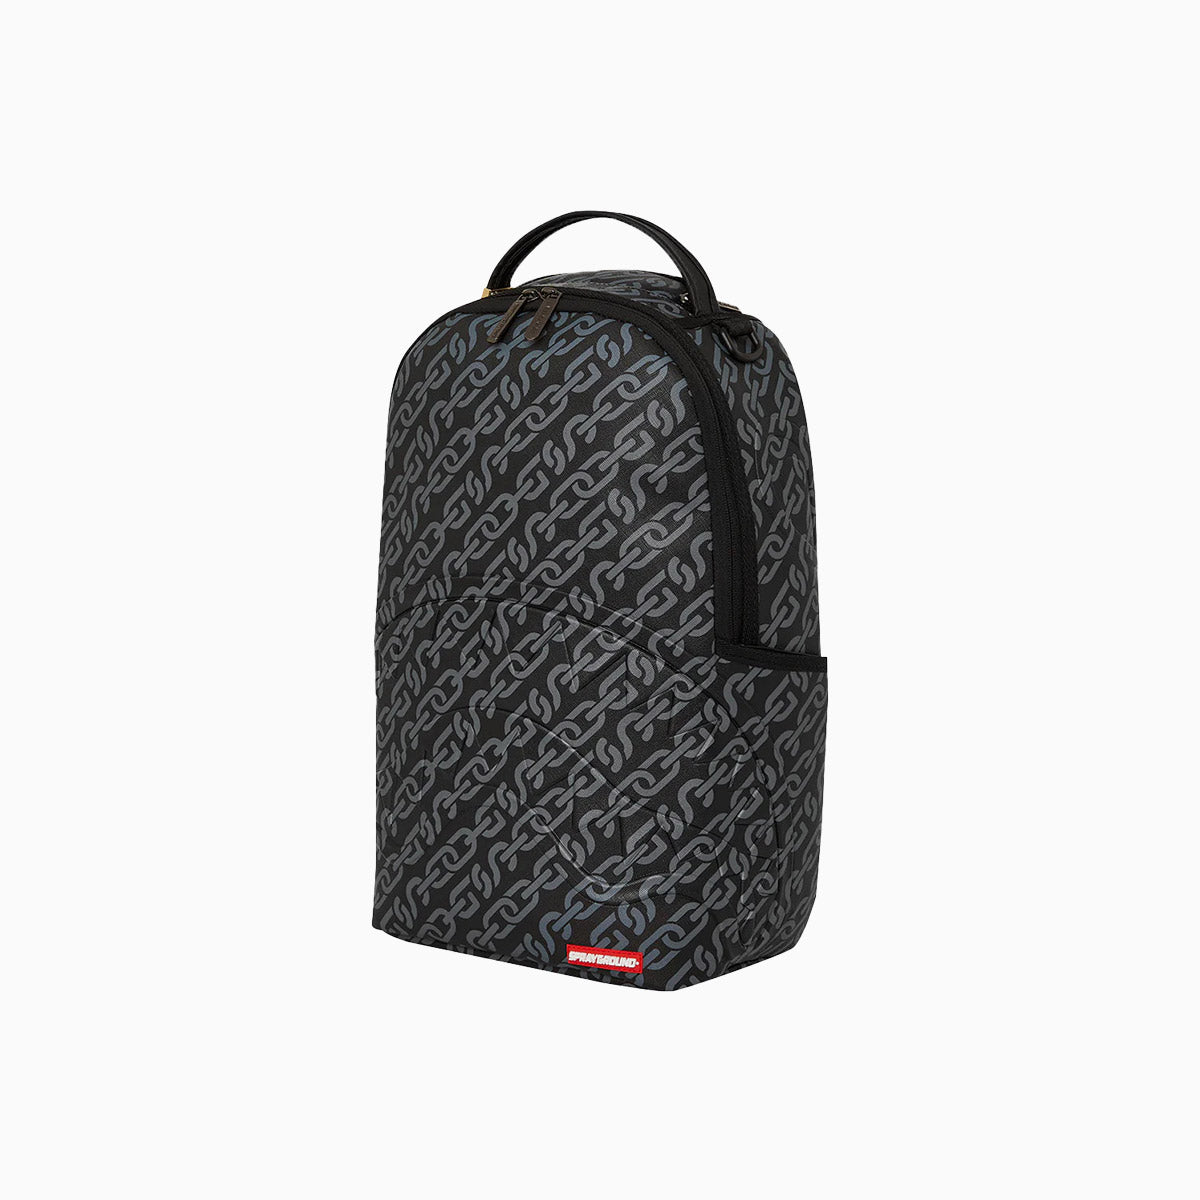 sprayground-sg-chains-backpack-b5381-blk